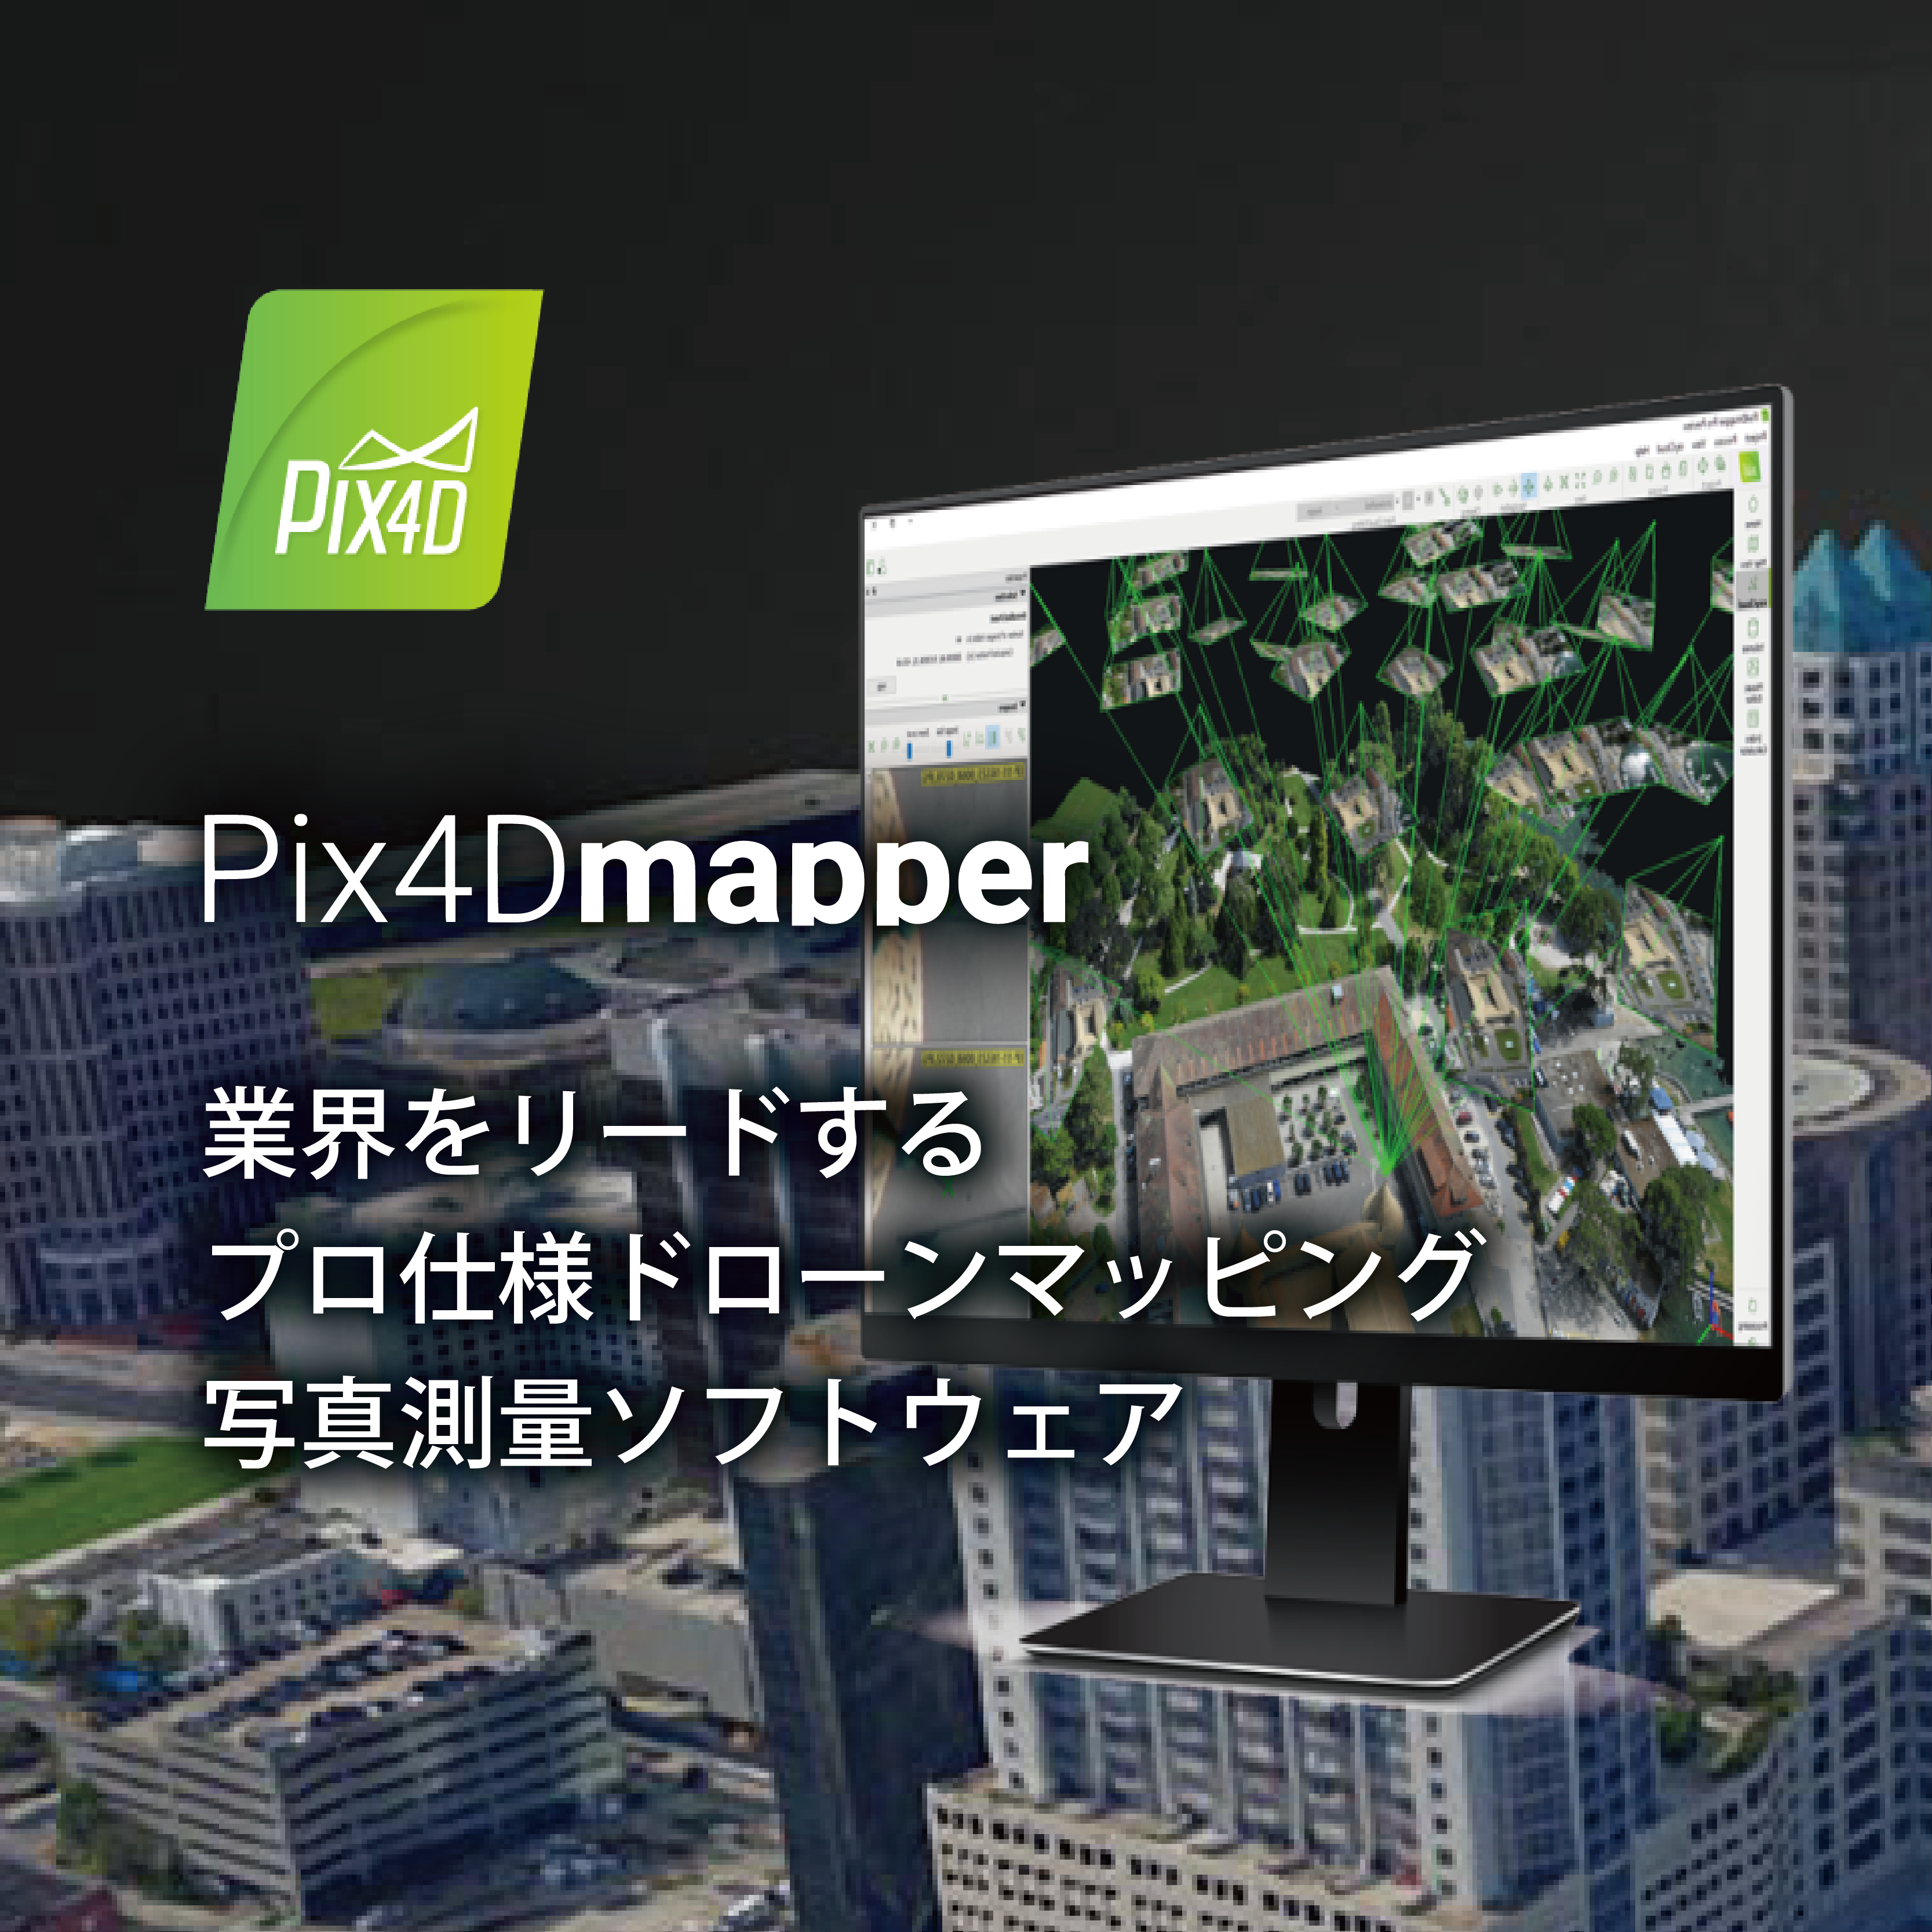 Pix4 Dmapper